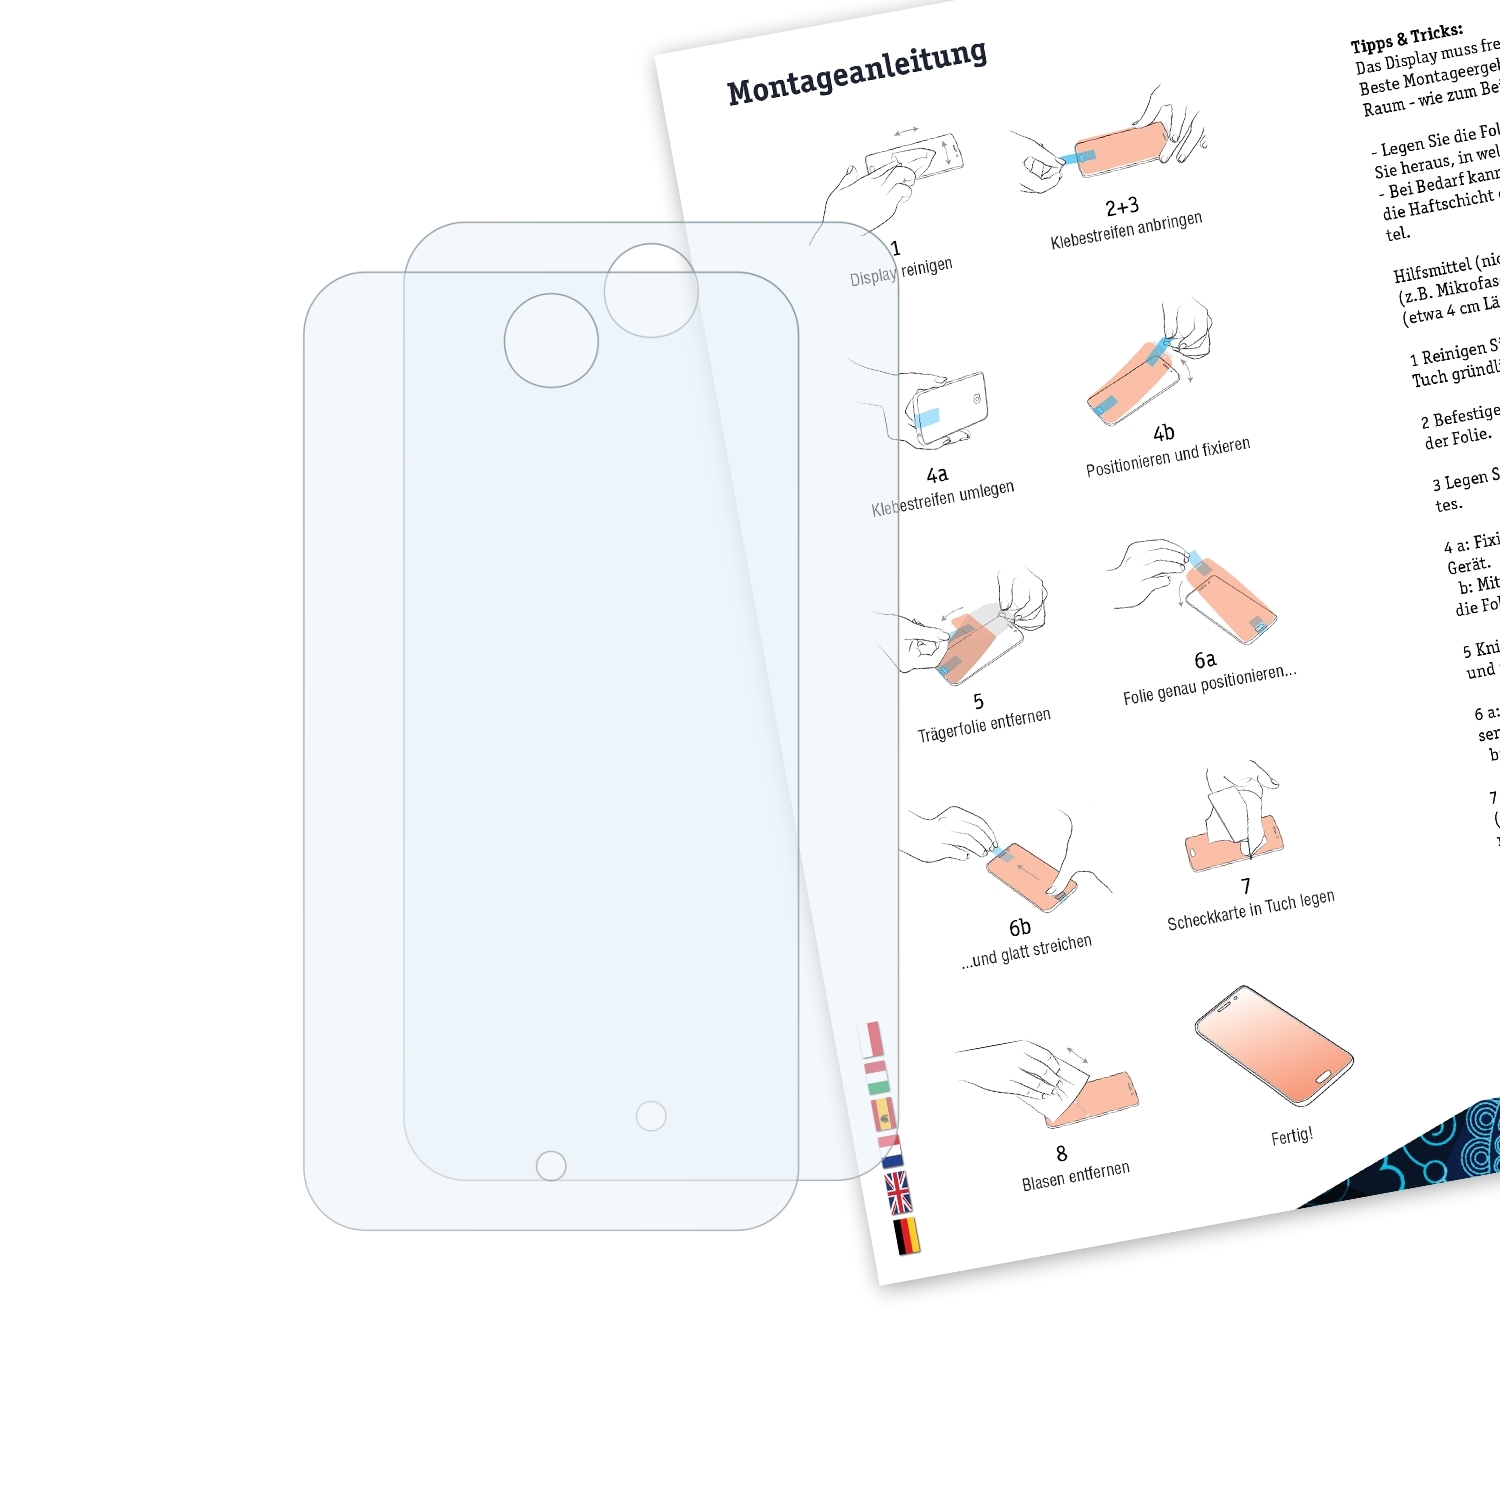 BRUNI 2x Basics-Clear Schutzfolie(für touch Apple 4G) iPod